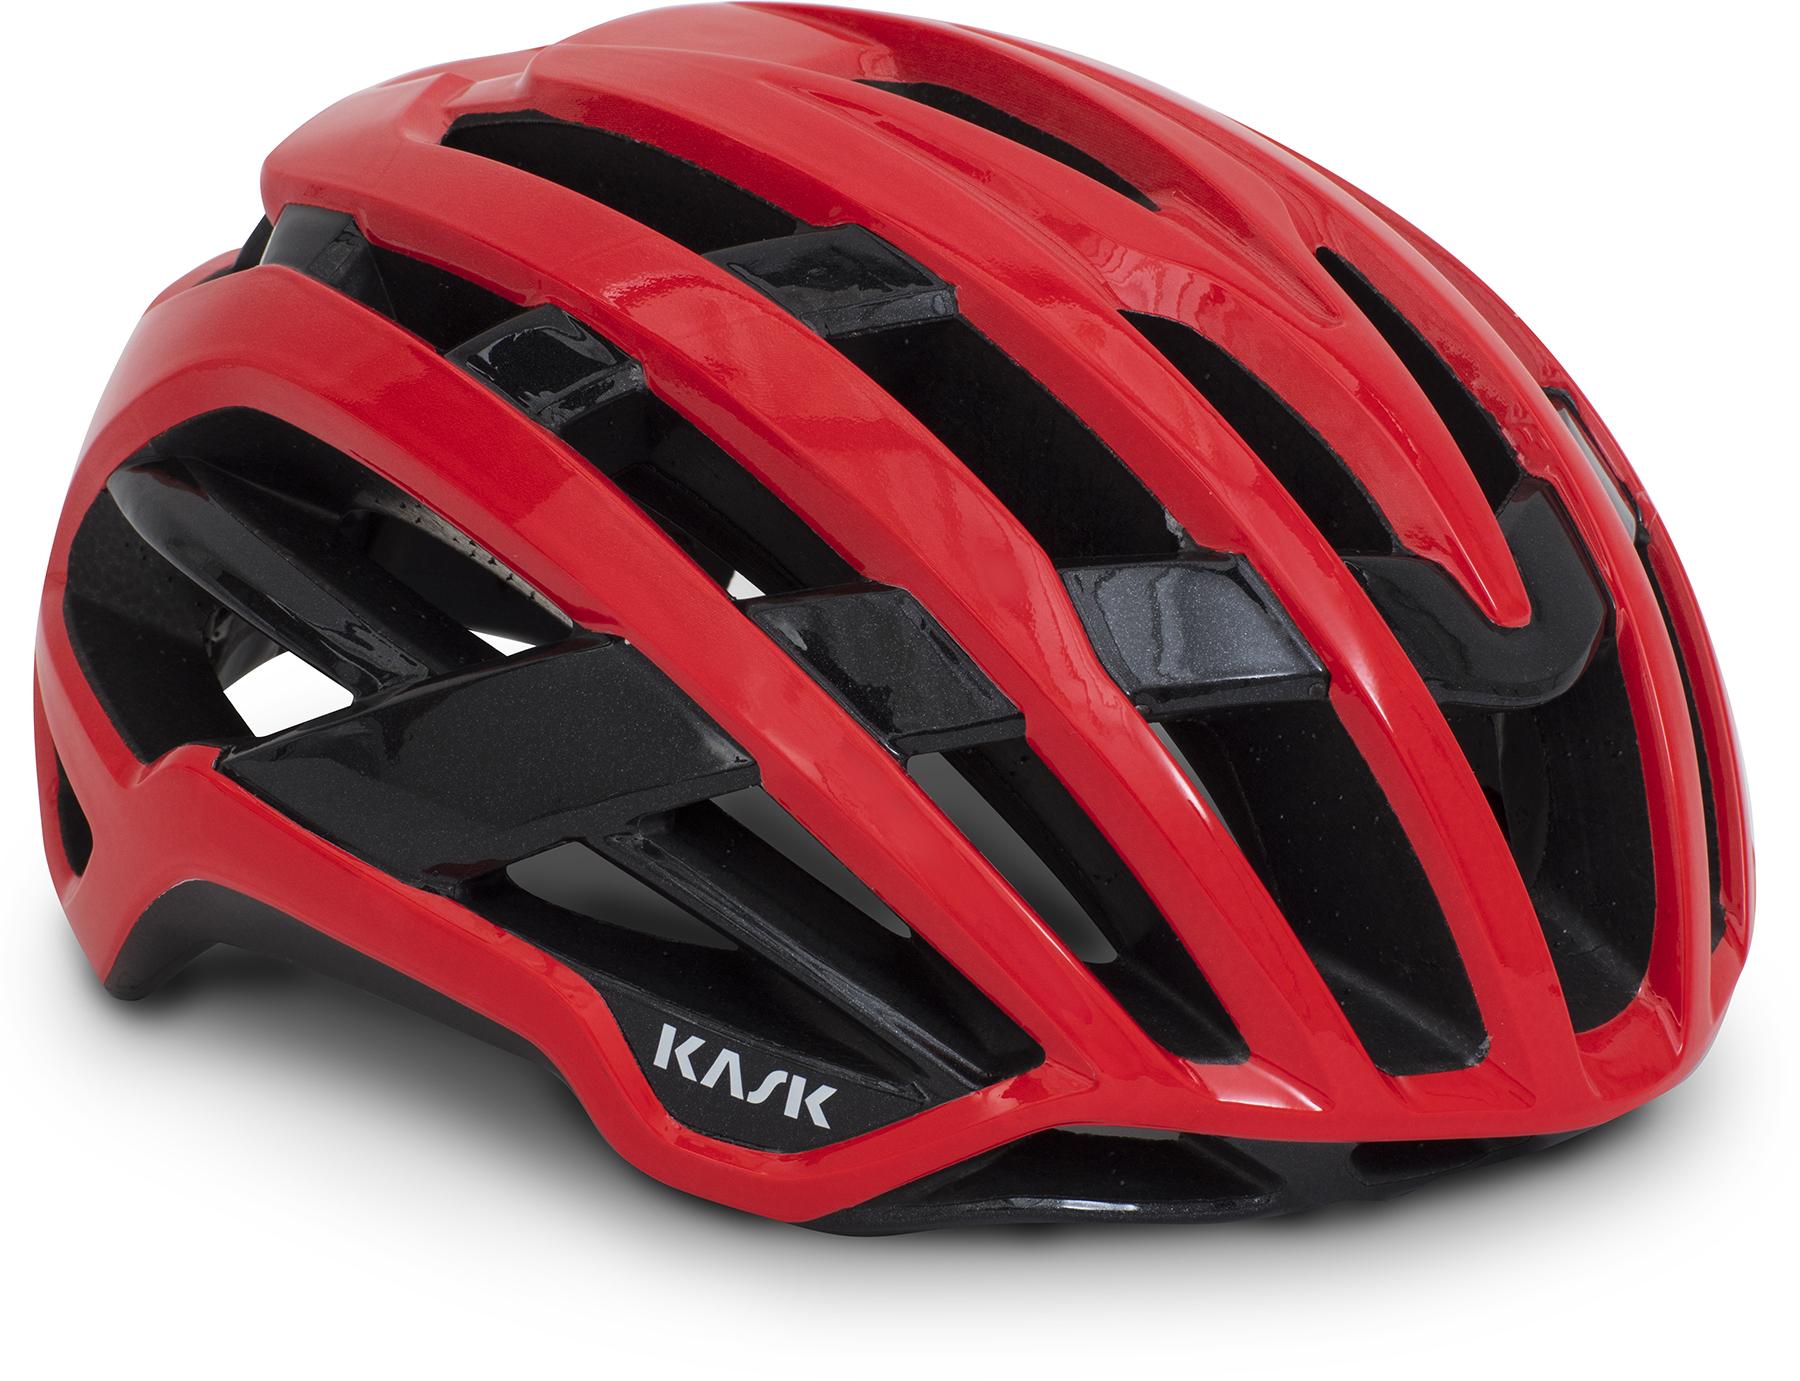 Kask Valegro Road Cycling Helmet (wg11) - Red